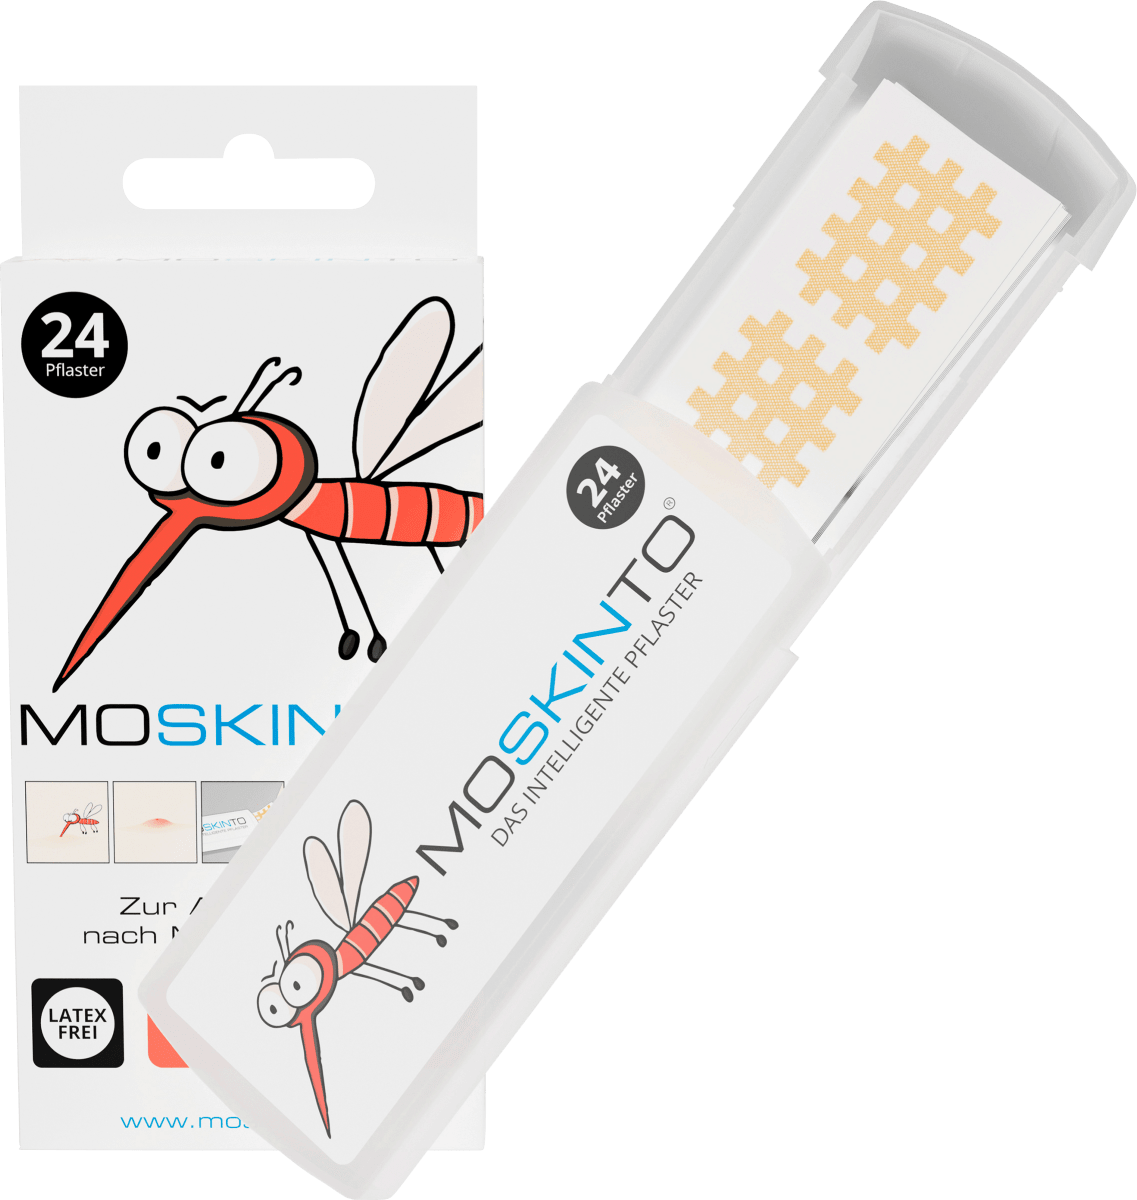 Moski-No Mückenschutz Spray (100ml) günstig kaufen